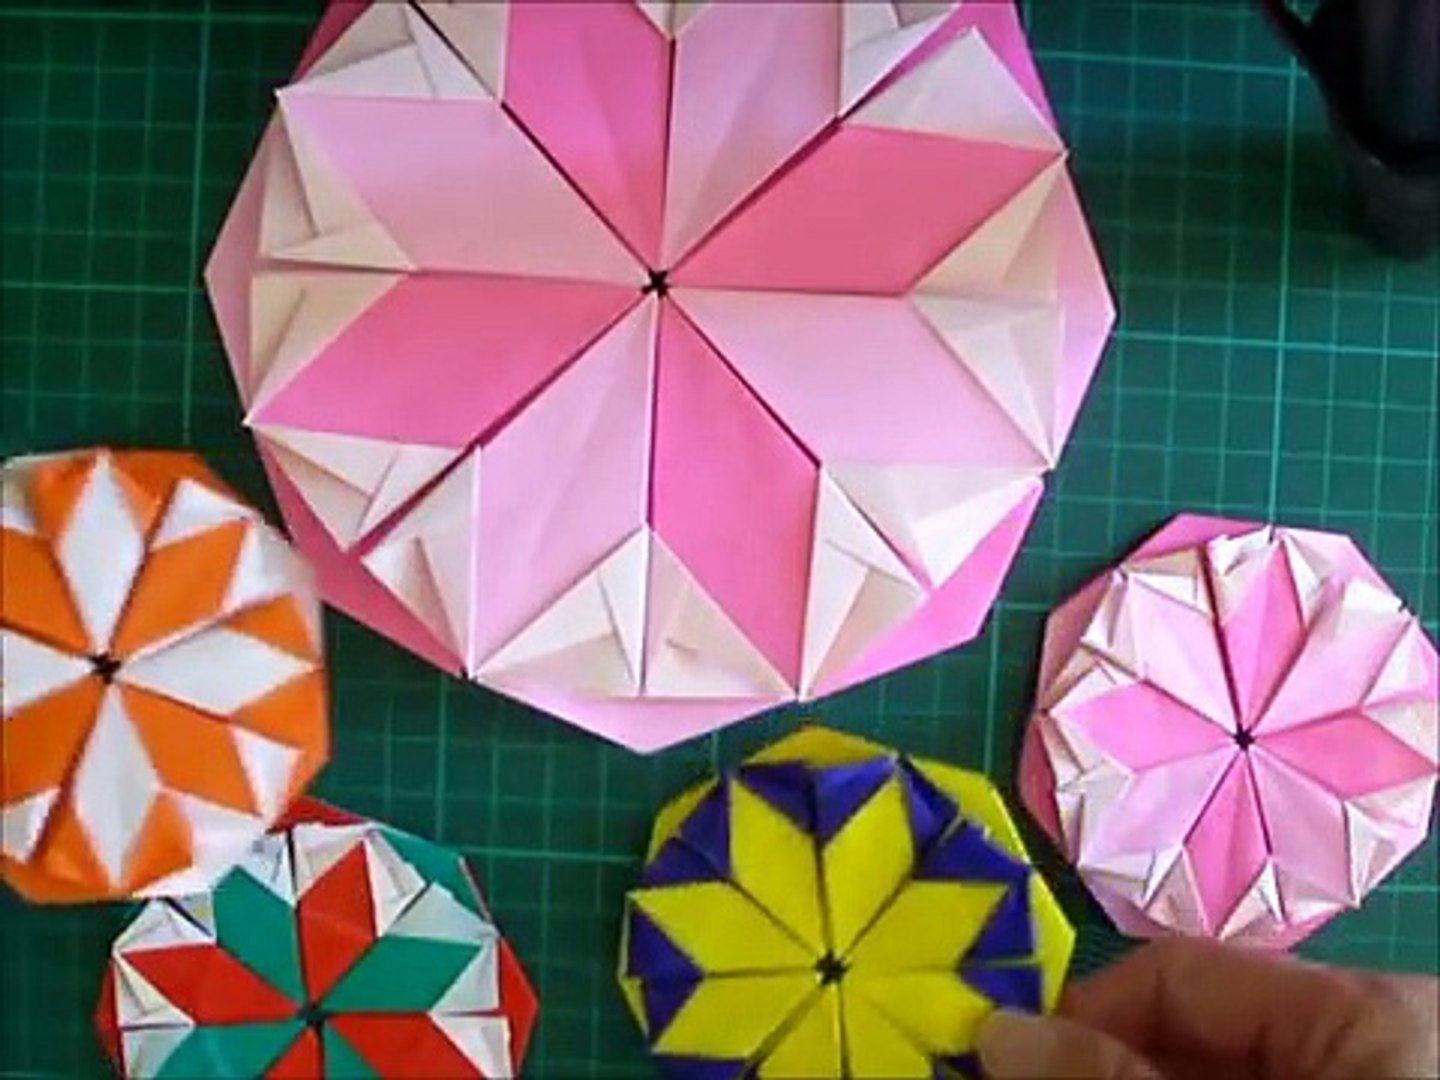 折り紙 花のコースターの簡単な折り方 Niceno1 Origami Flower Coaster Tutorial 4vwh1burkha Video Dailymotion